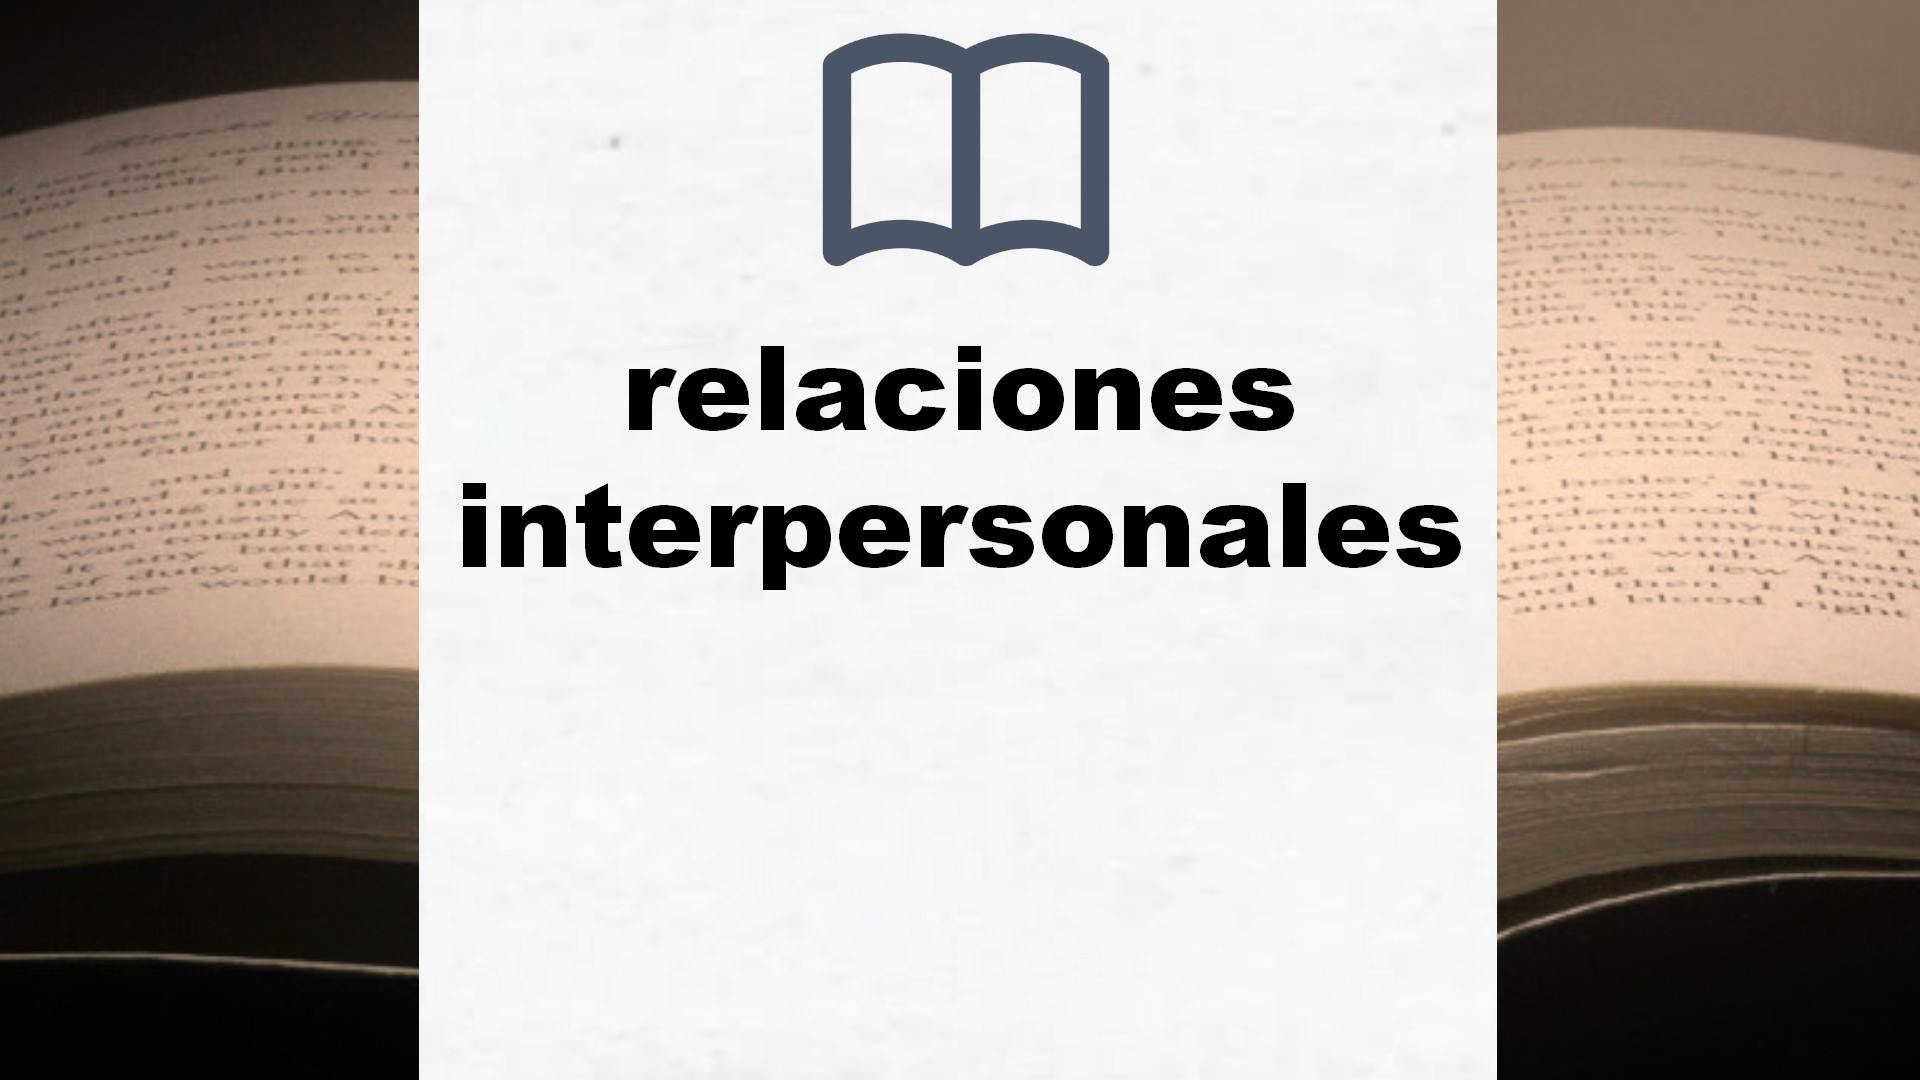 Libros sobre relaciones interpersonales